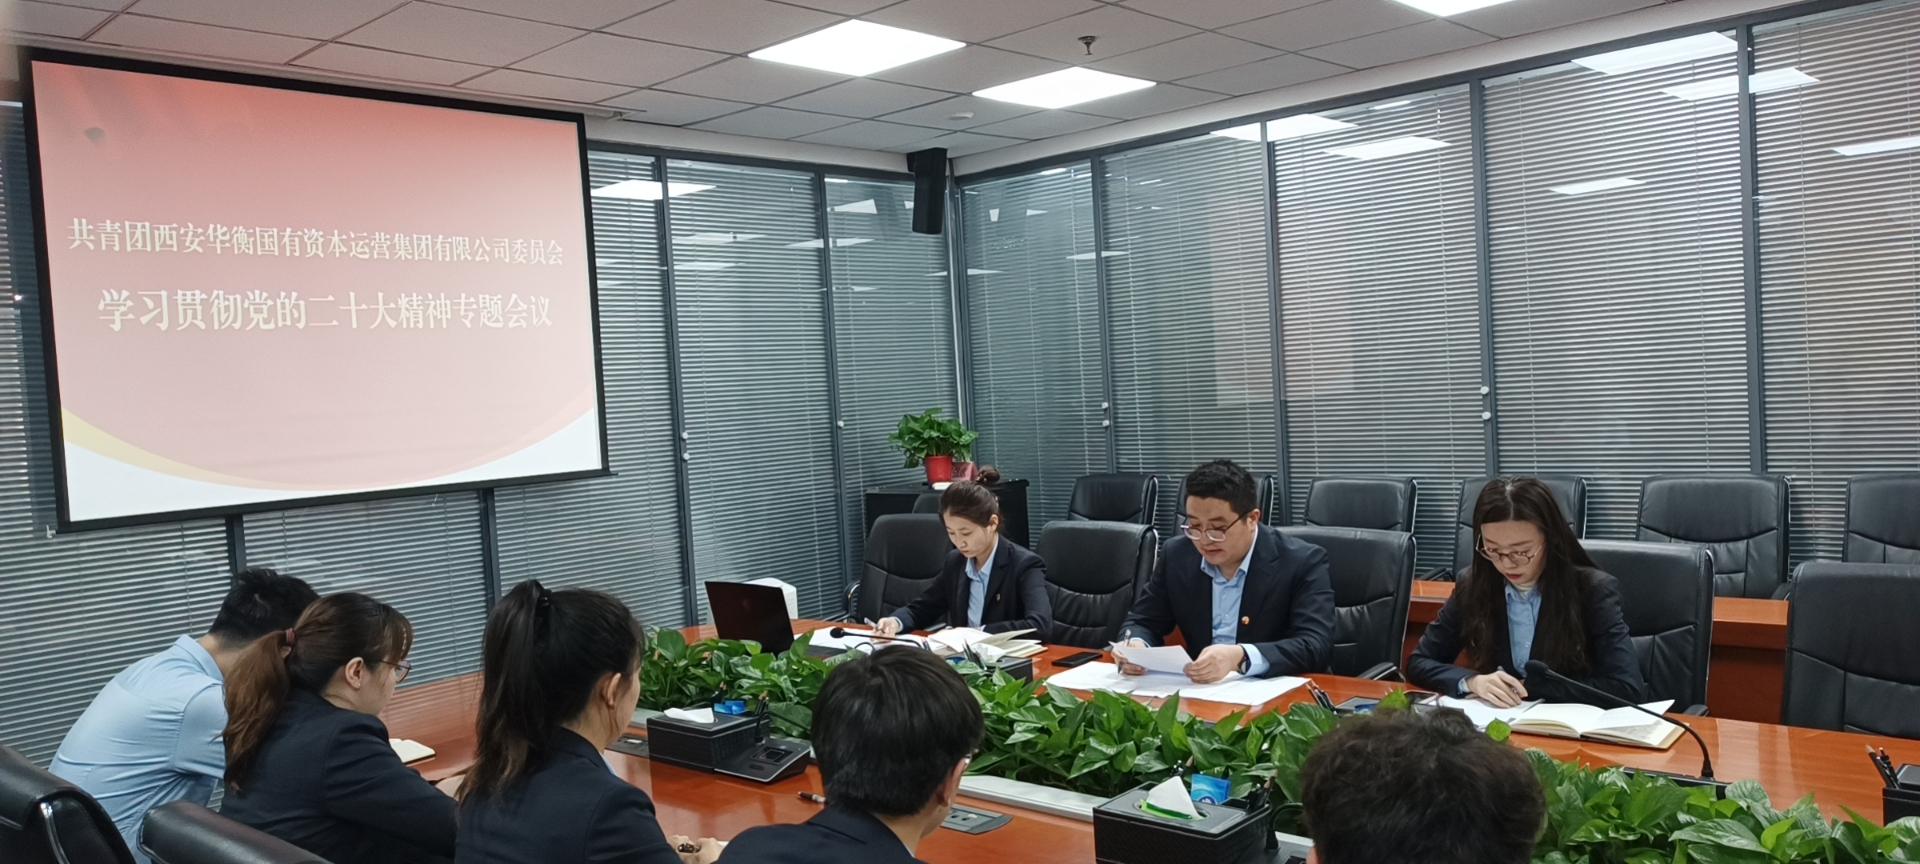 西安华衡集团团委召开专题会议学习宣传贯彻党的二十大精神